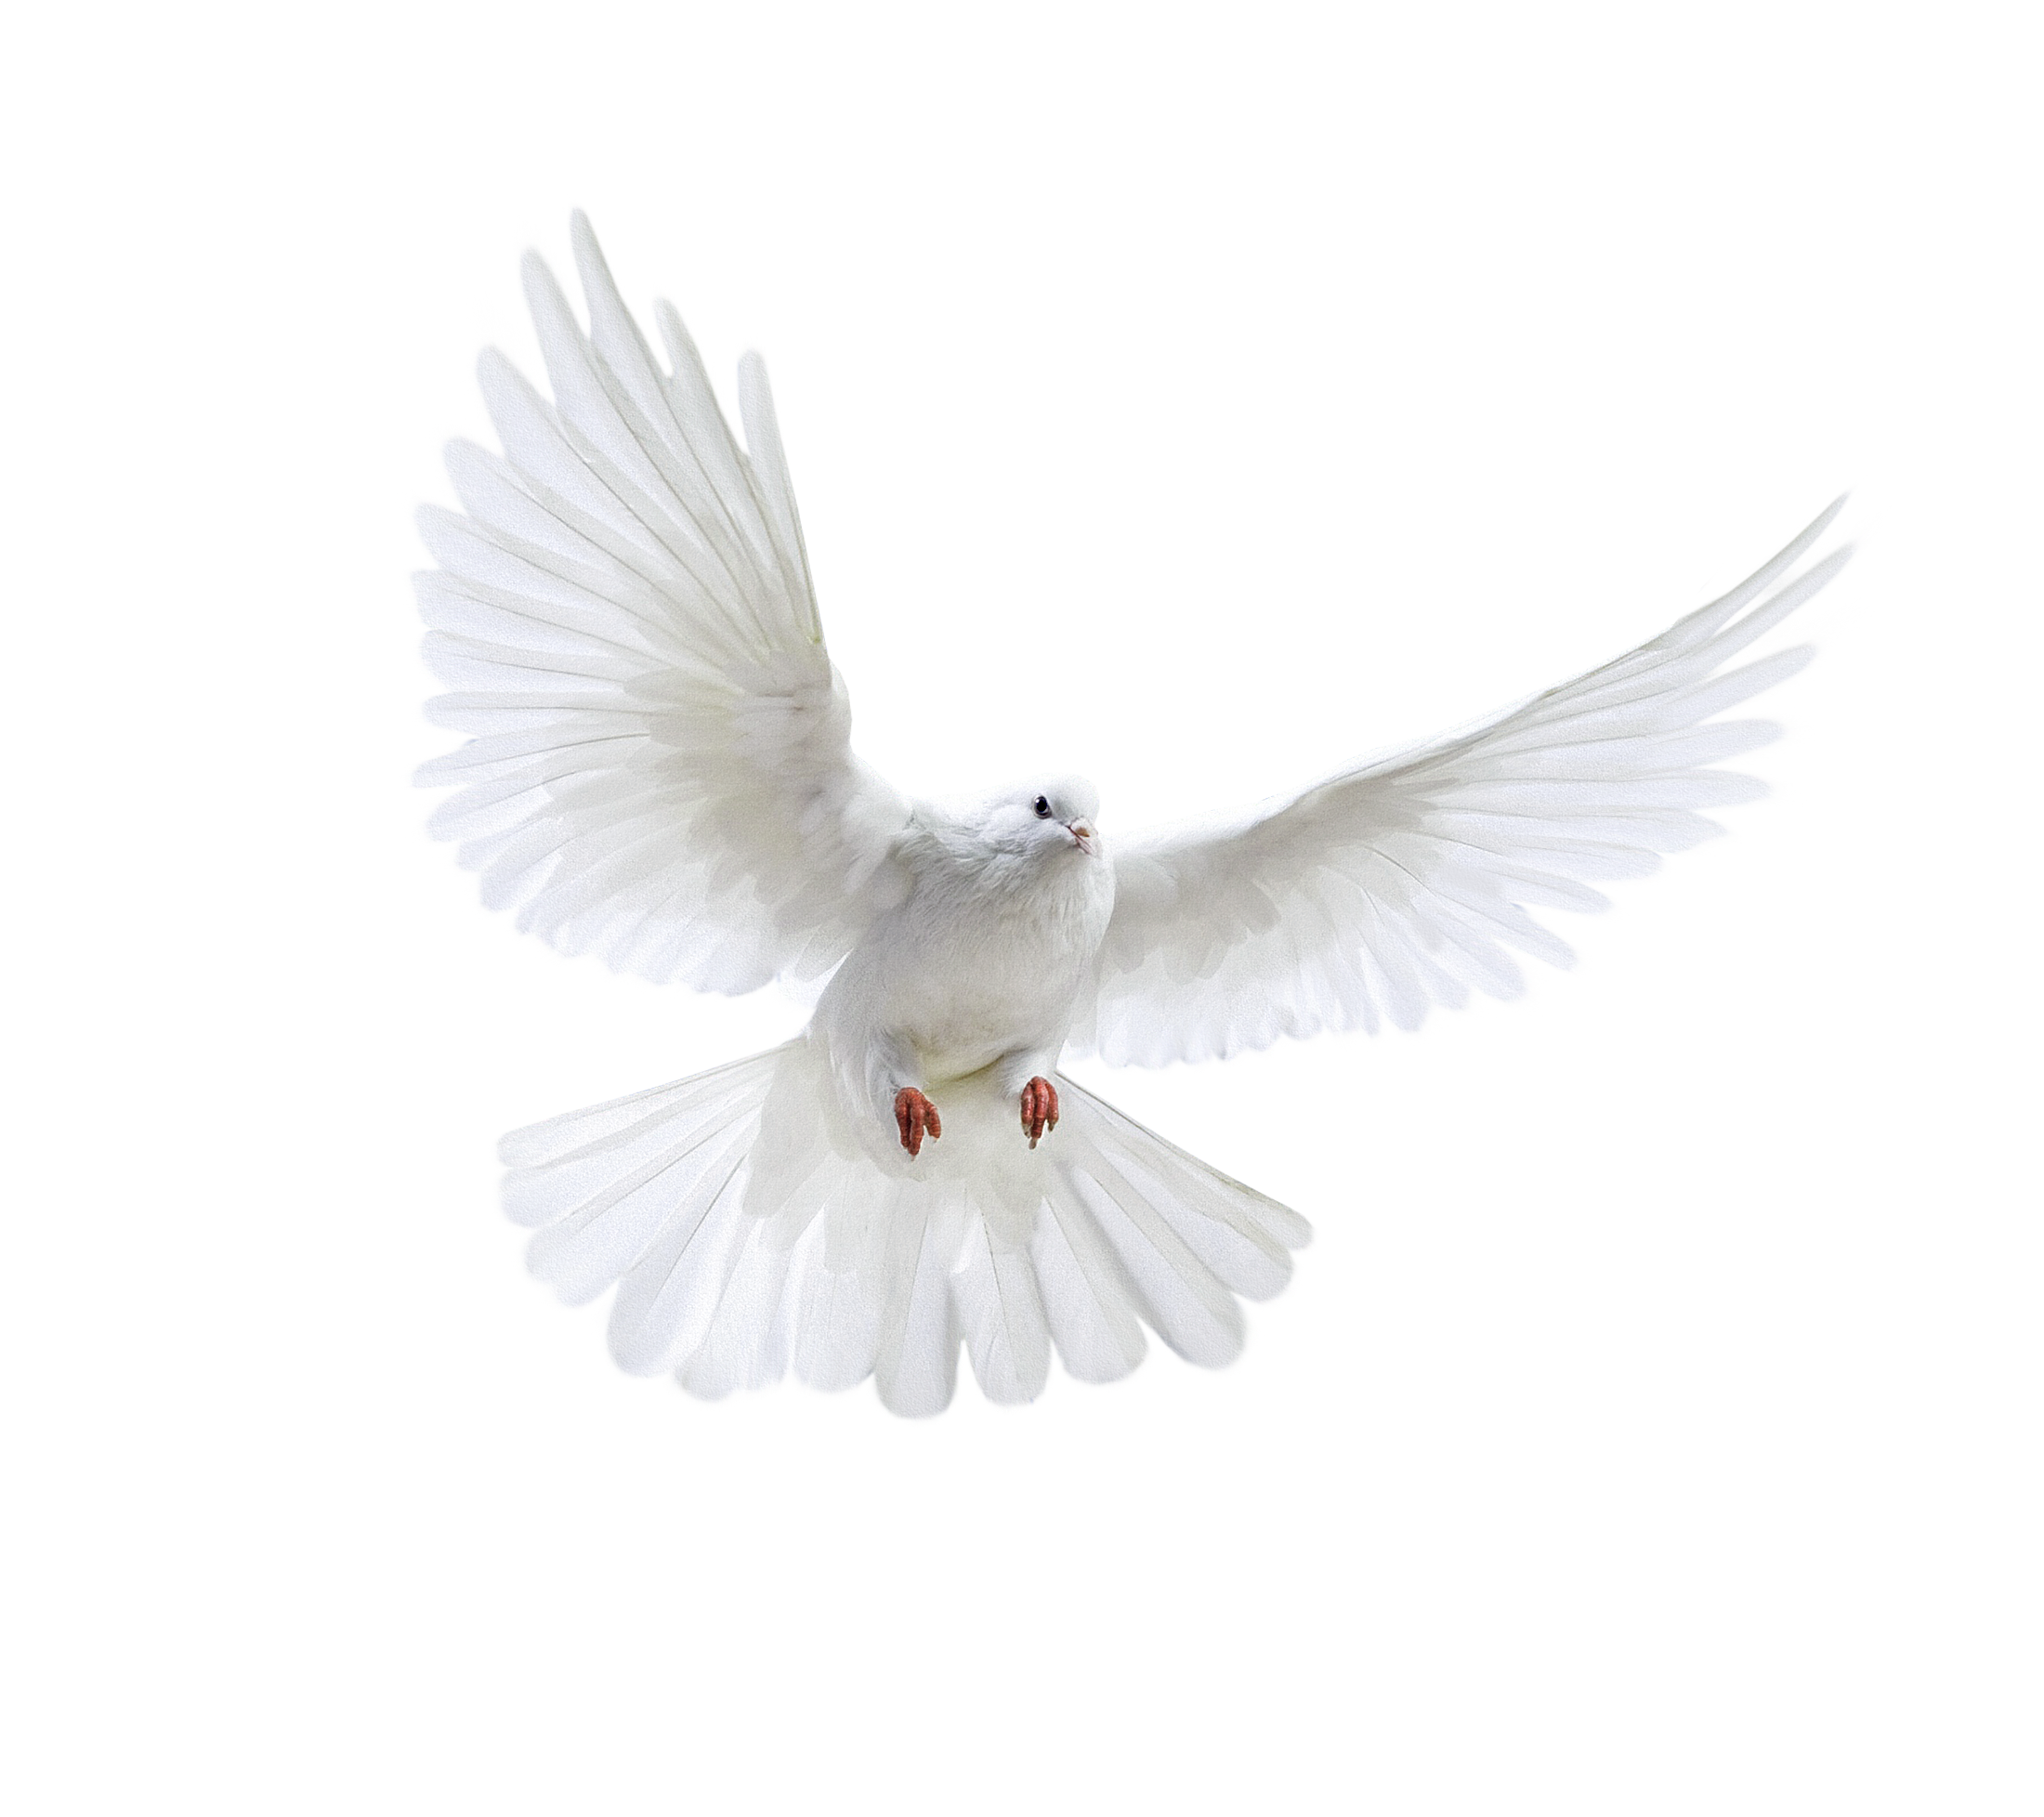 सफेद उड़ने वाला कबूतर